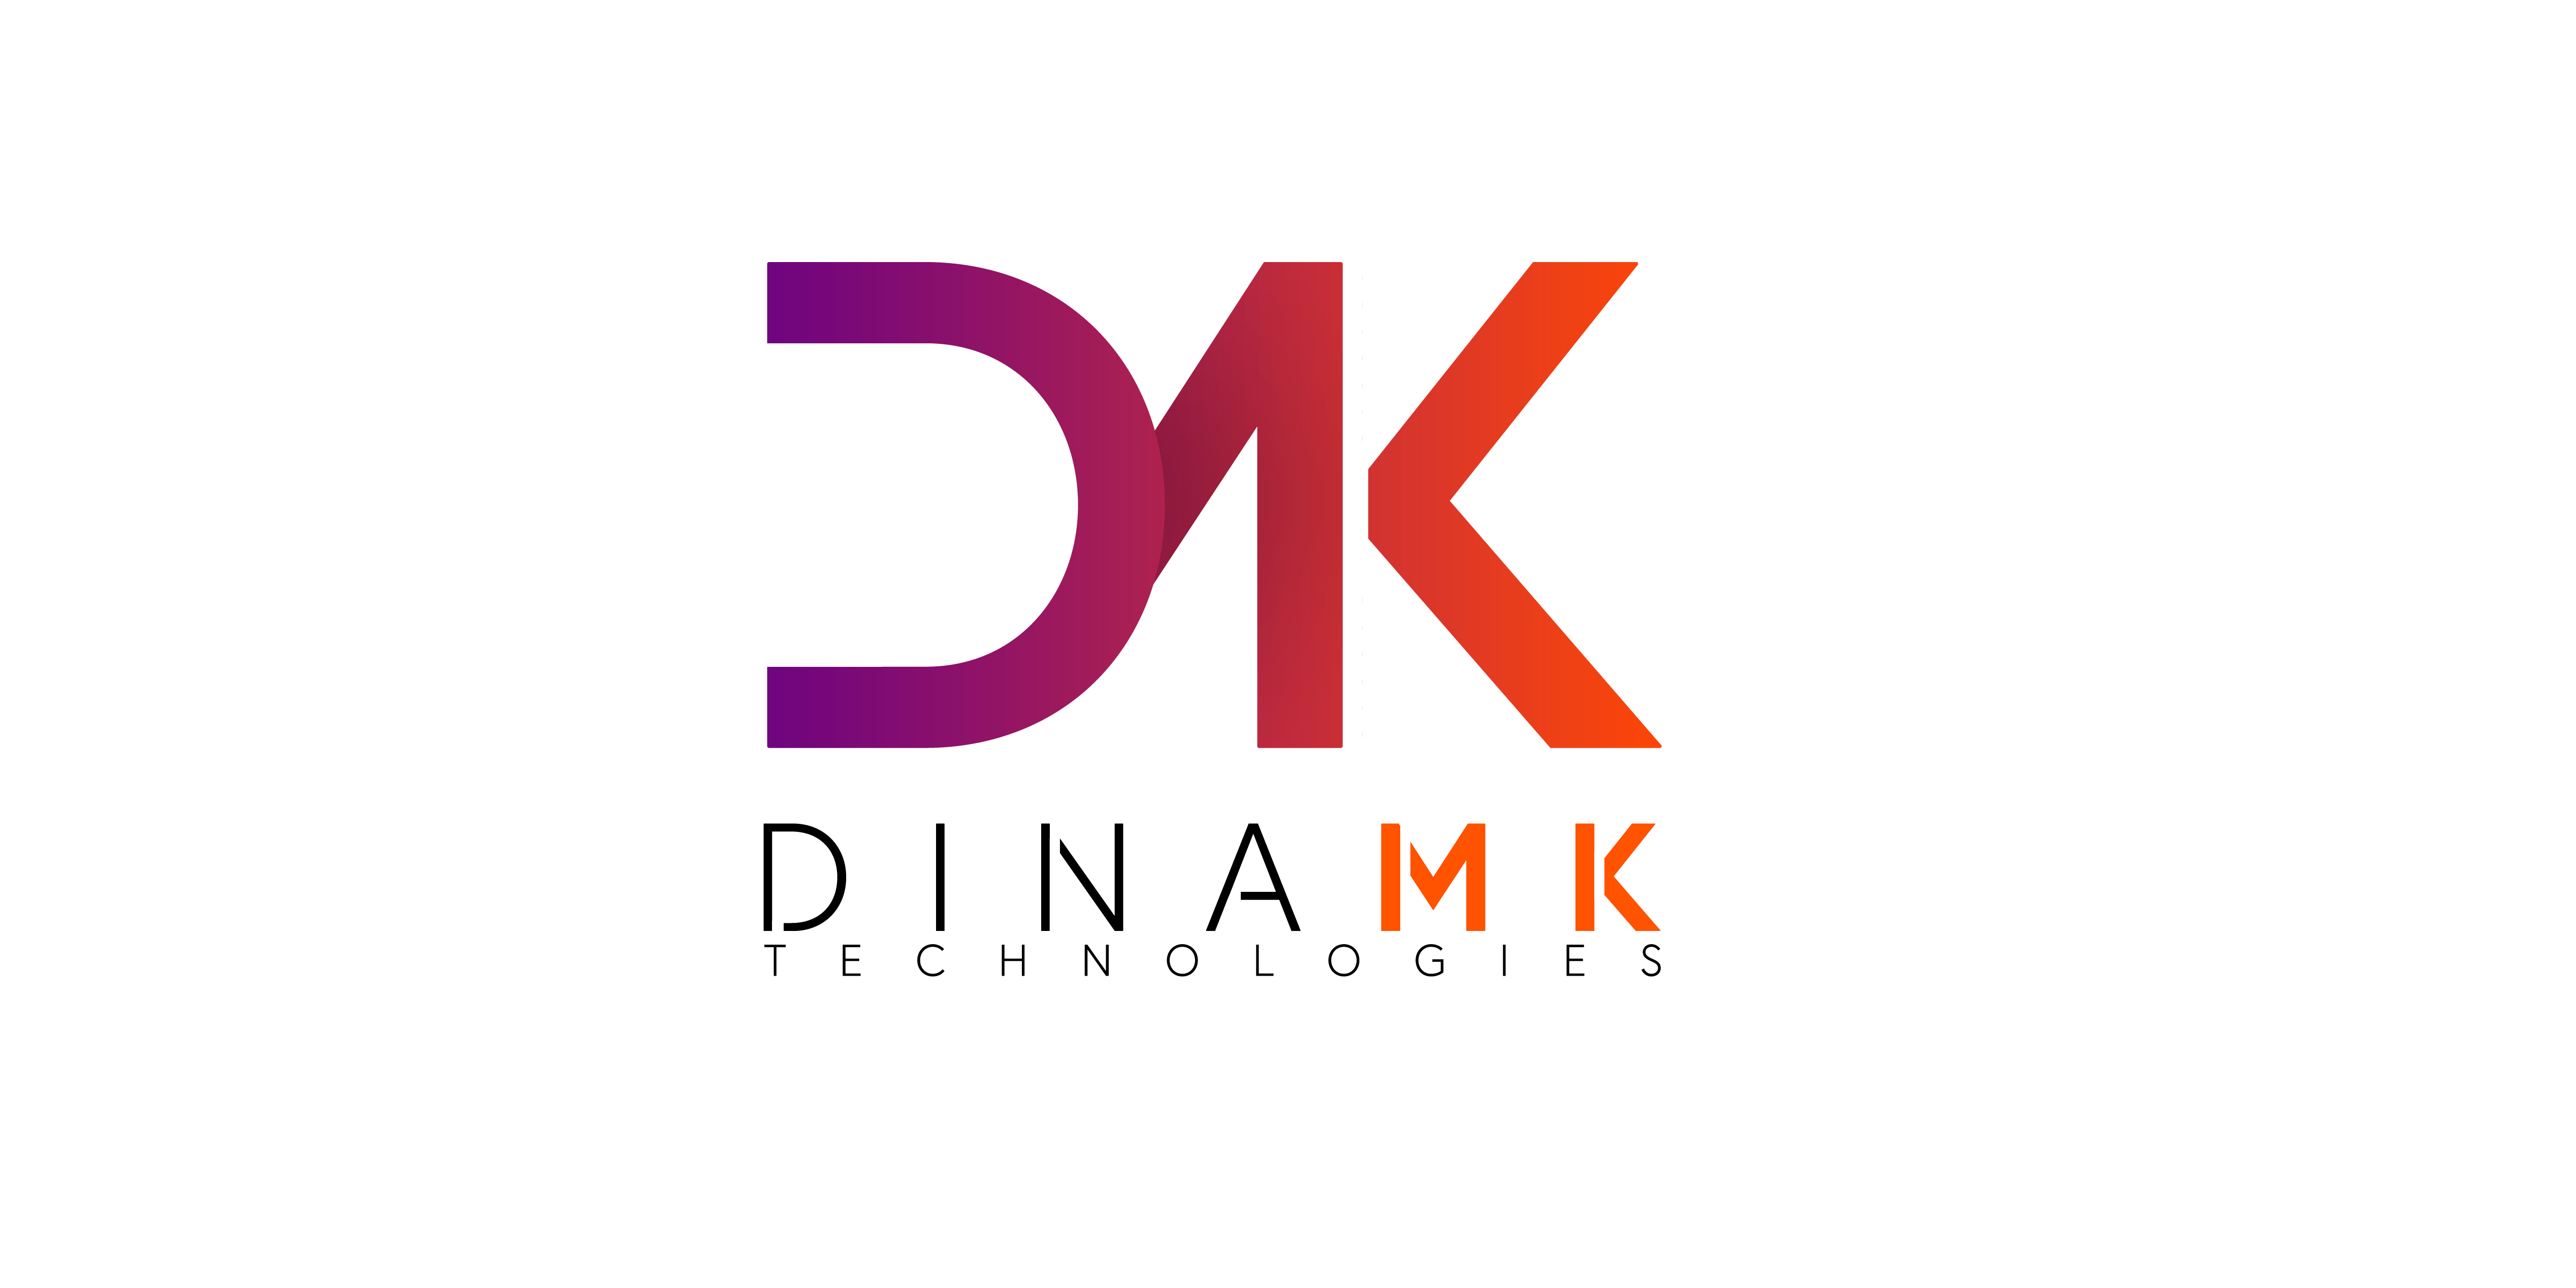 DinaMK | “La red y las soluciones de digitalización son imprescindibles”